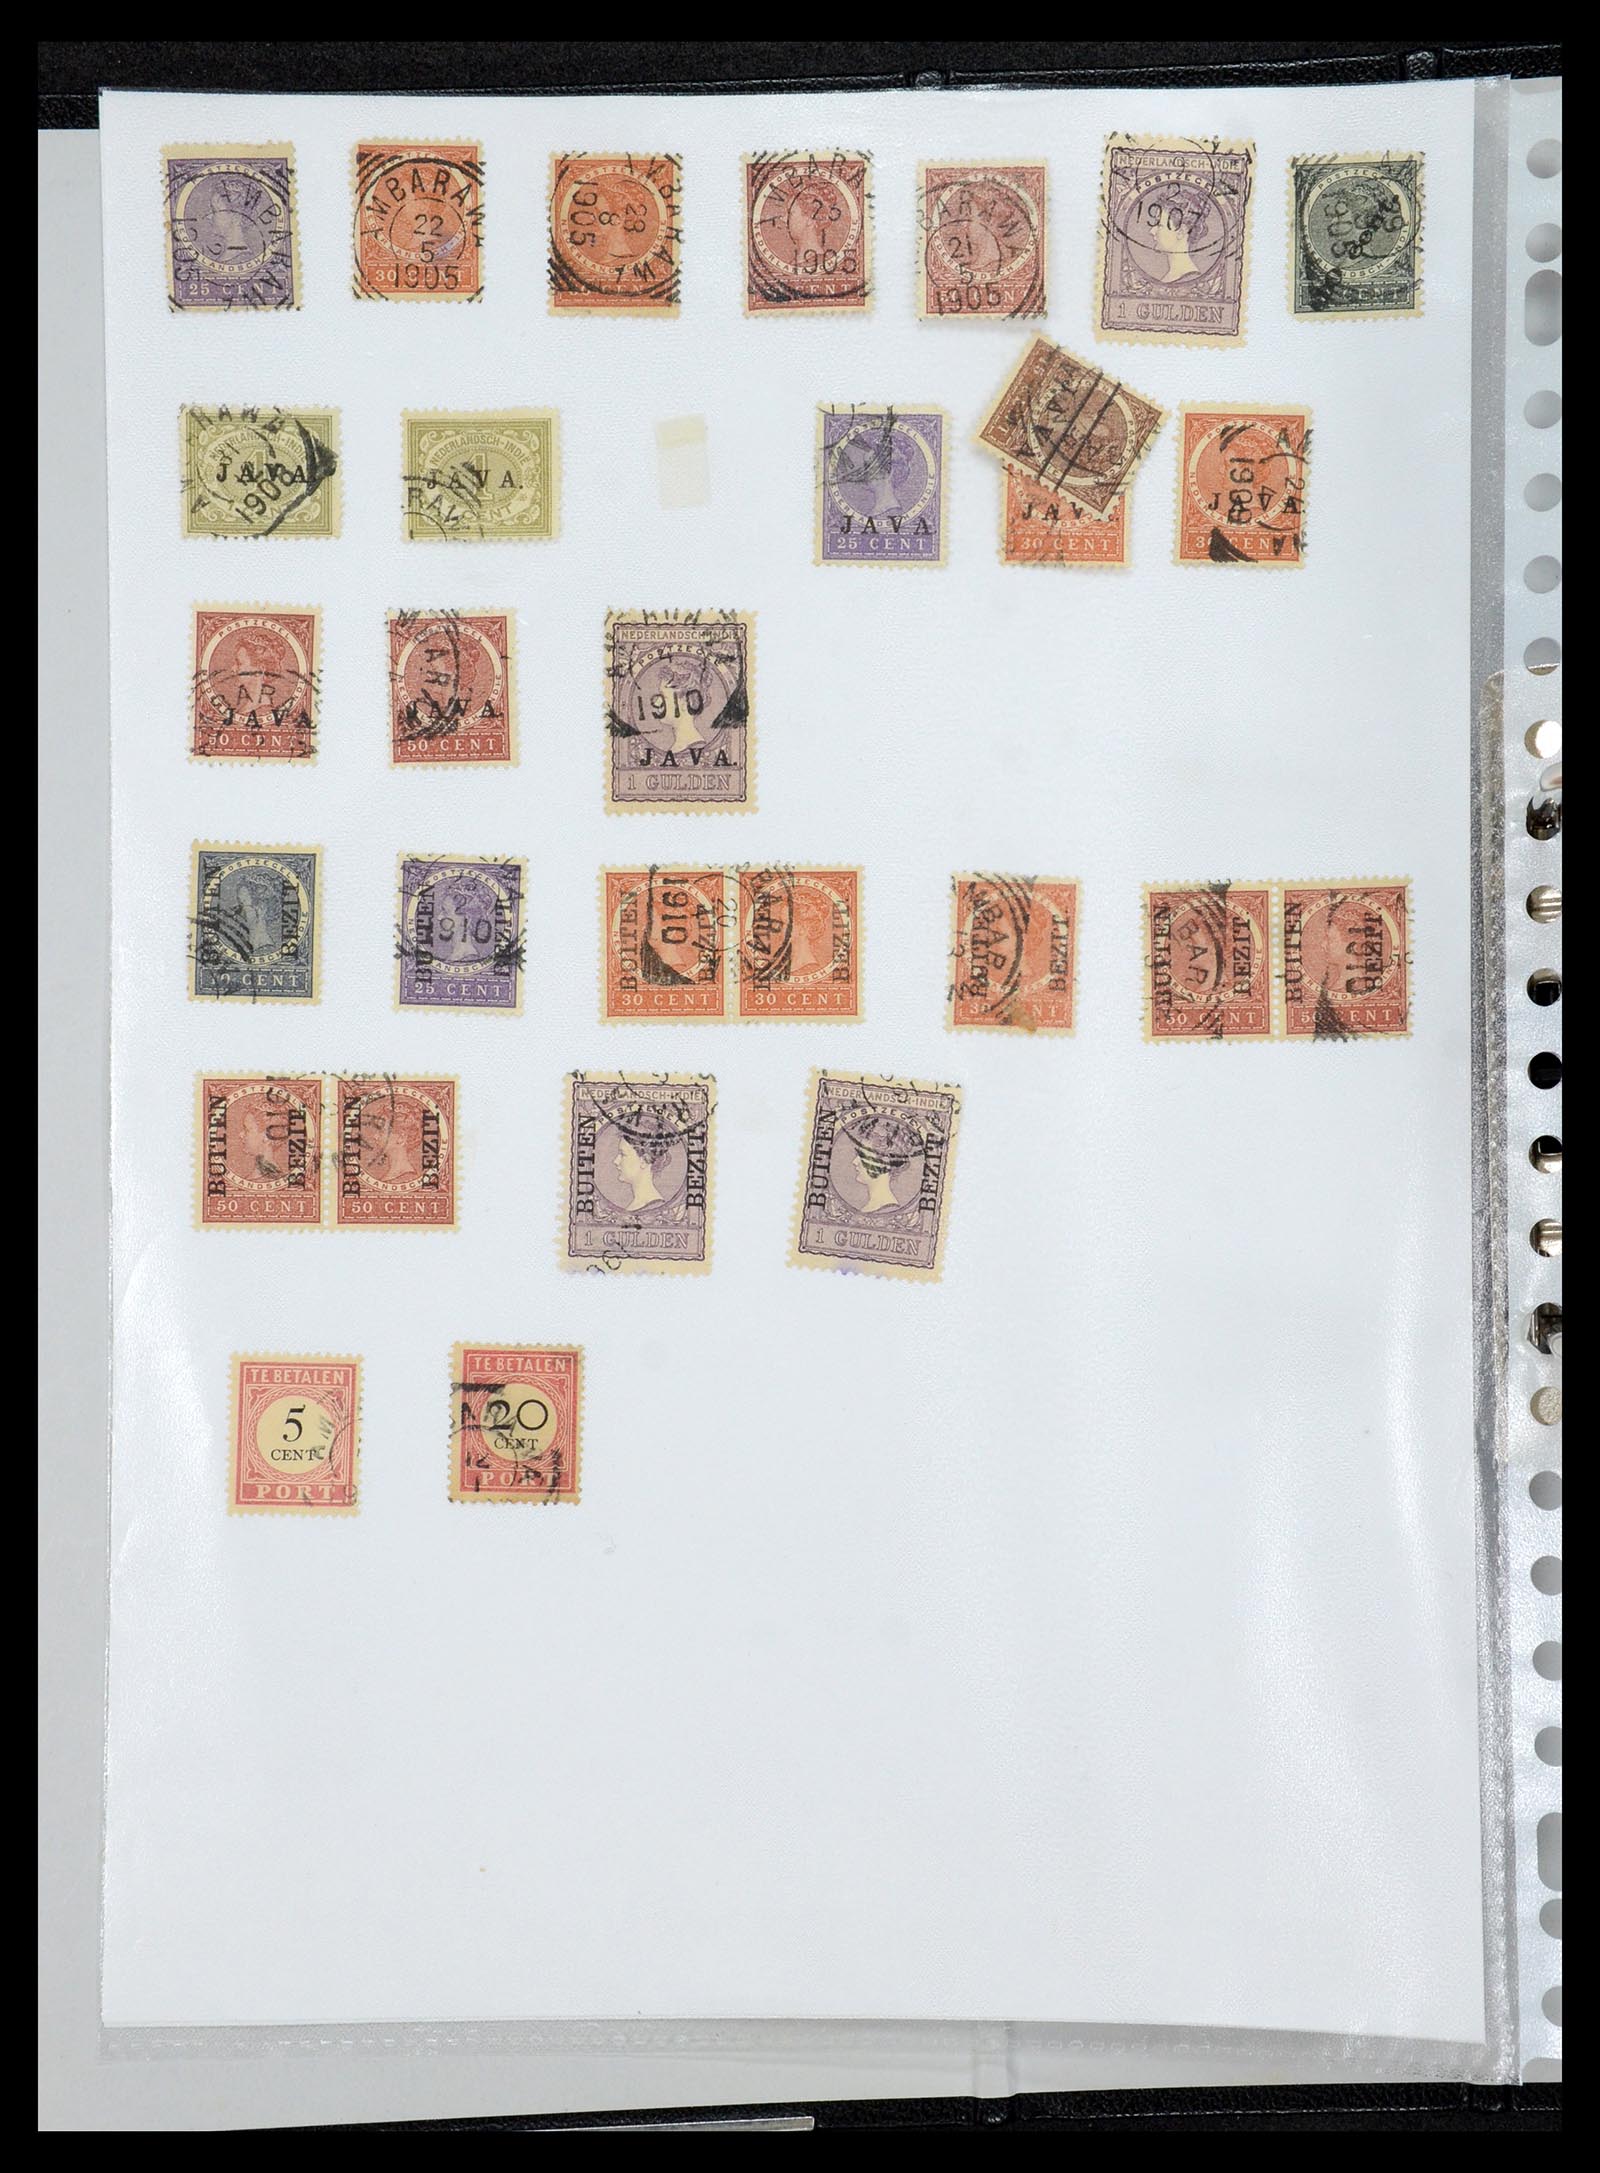 36432 002 - Postzegelverzameling 36432 Nederlands Indië vierkant stempels.